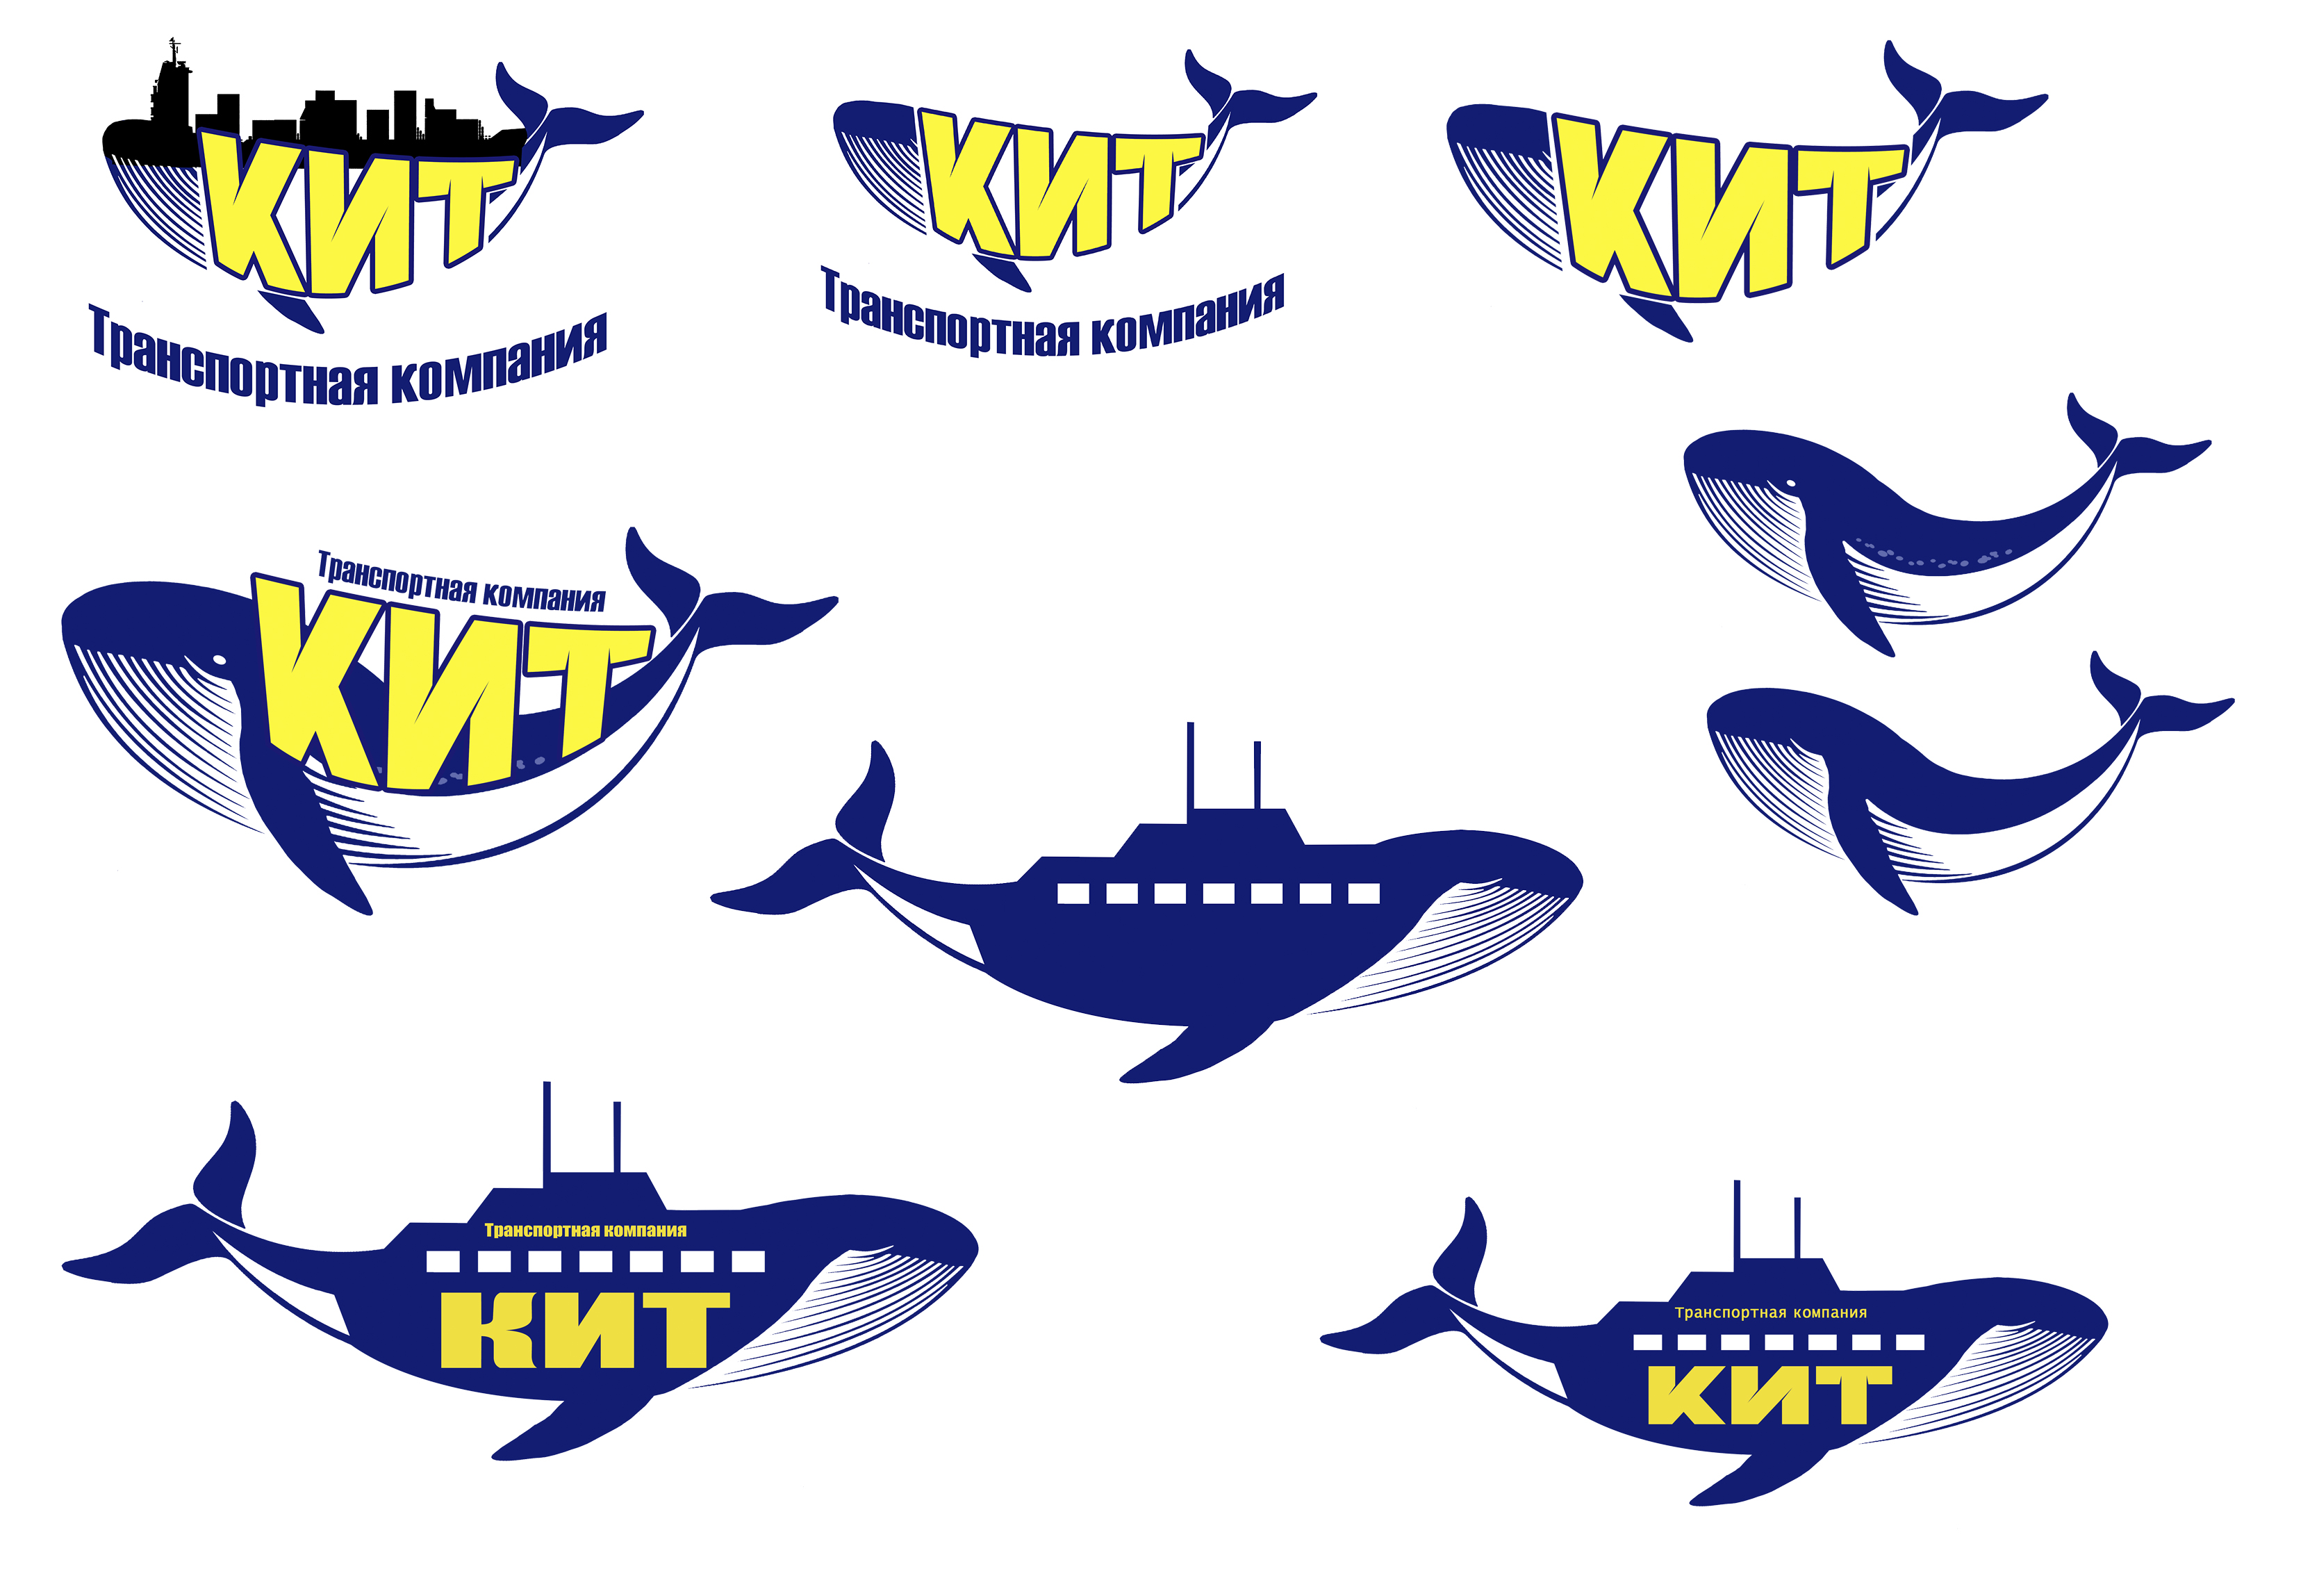 Тк кит приложение. Кит транспортная компания логотип. ТК кит логотип транспортная компания. Значок ТК кит. Транспортная компания кит GTD логотип.